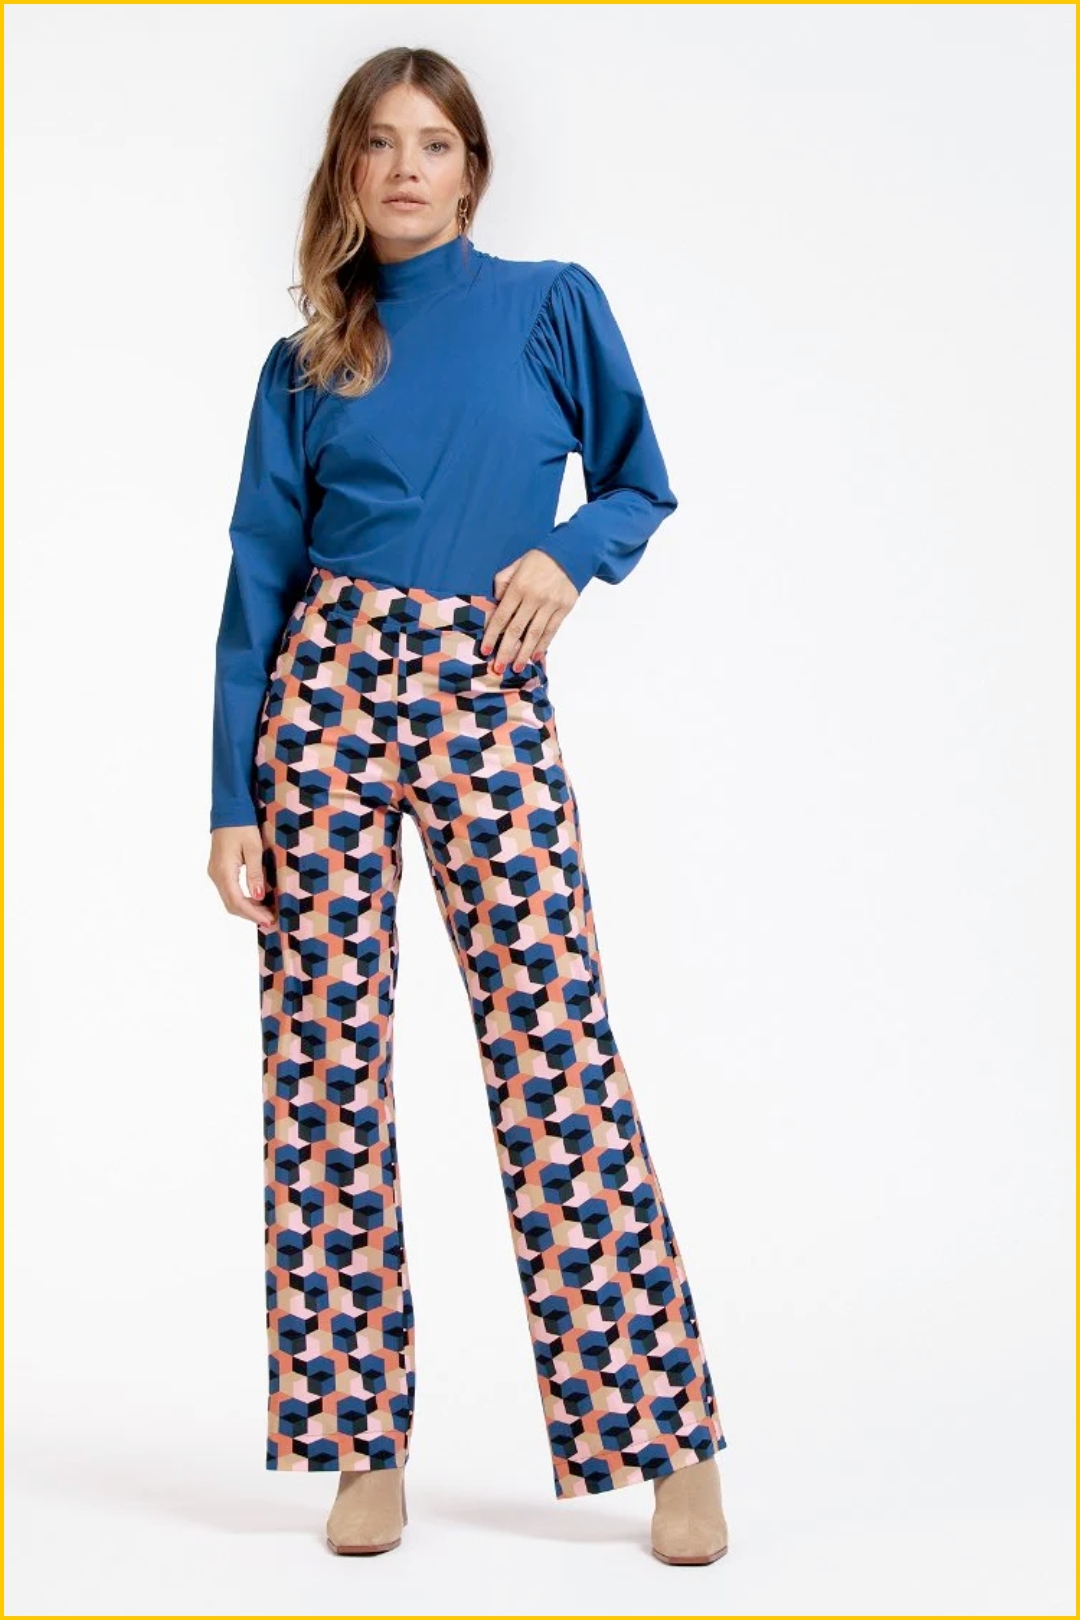 Marilon trousers - STU220068 big tiles multi color